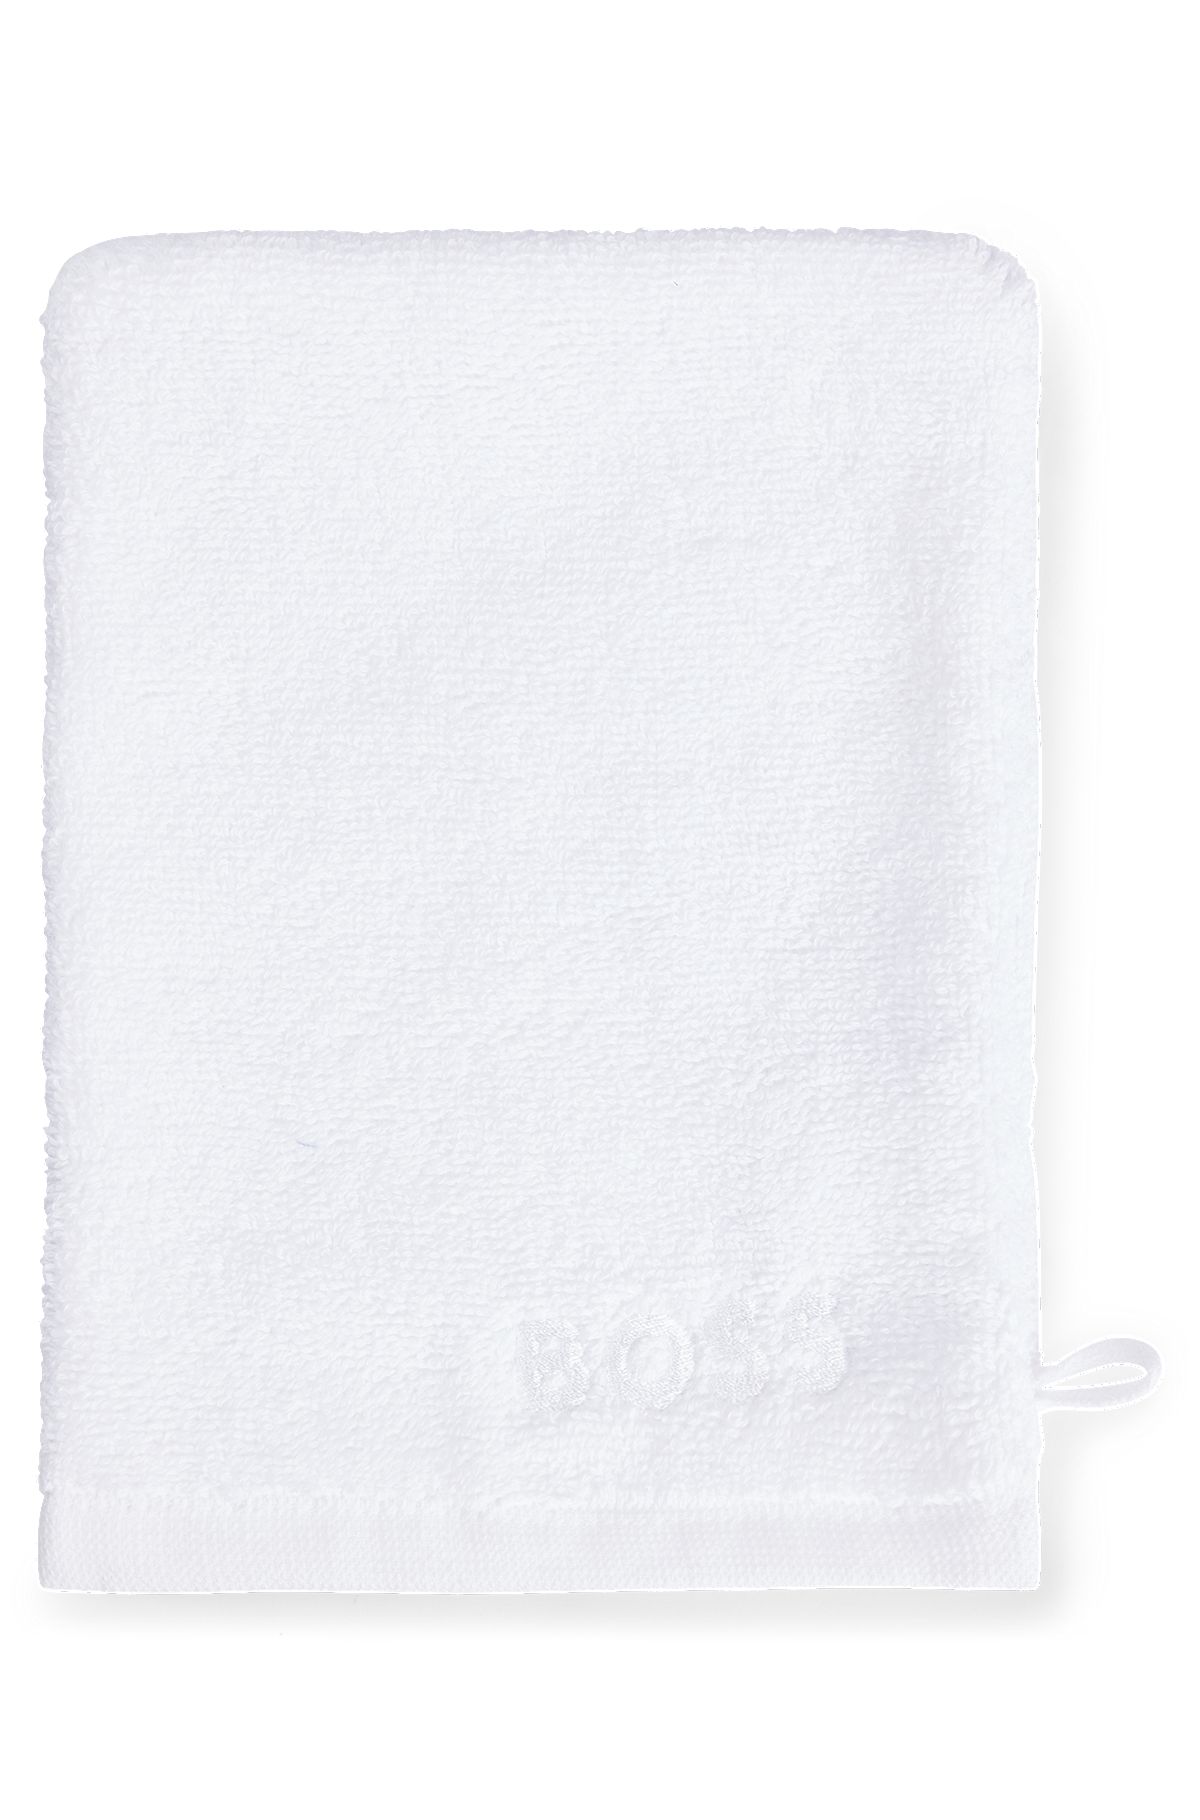 Waschhandschuh aus ägyptischer Baumwolle mit kontrastfarbenem Logo, Weiß